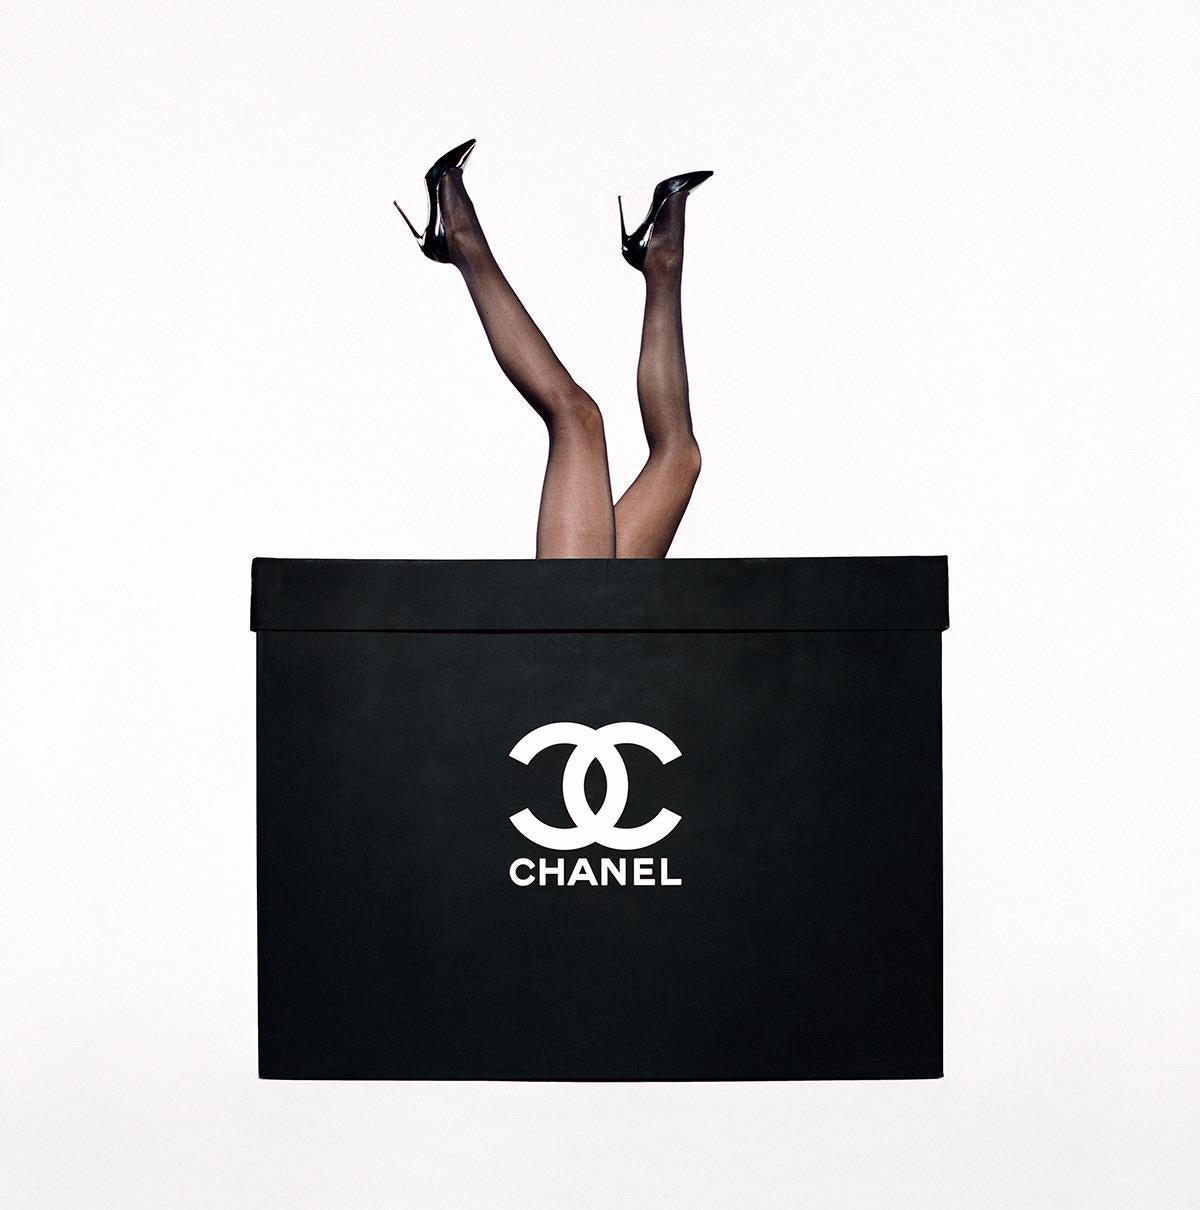 Tyler Shields - Chanel Legs, photographie de 2016, imprimée d'après